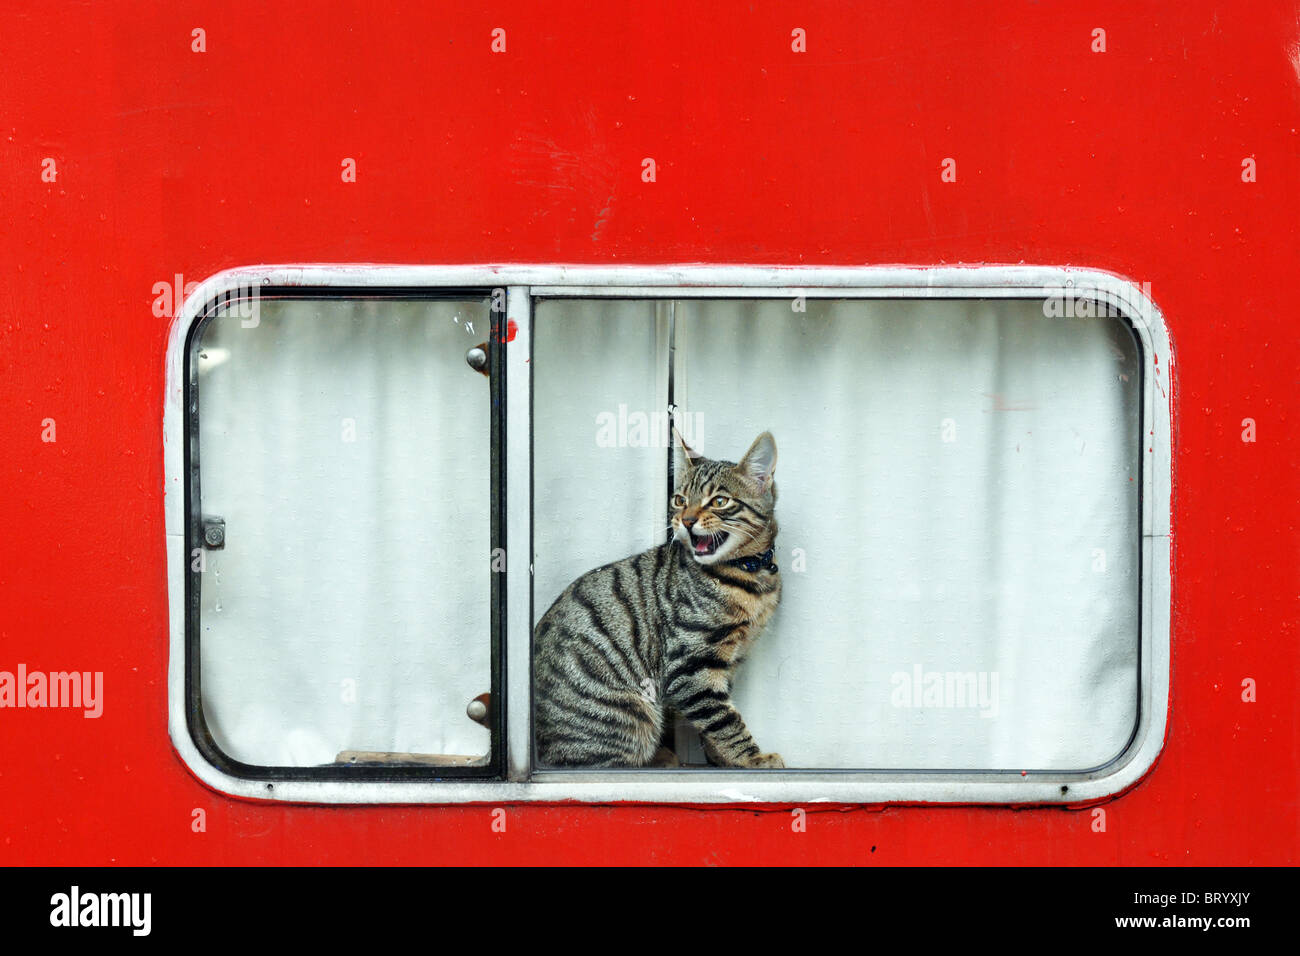 Un chat tigré meows à partir d'une fenêtre canal boat rouge vif Banque D'Images